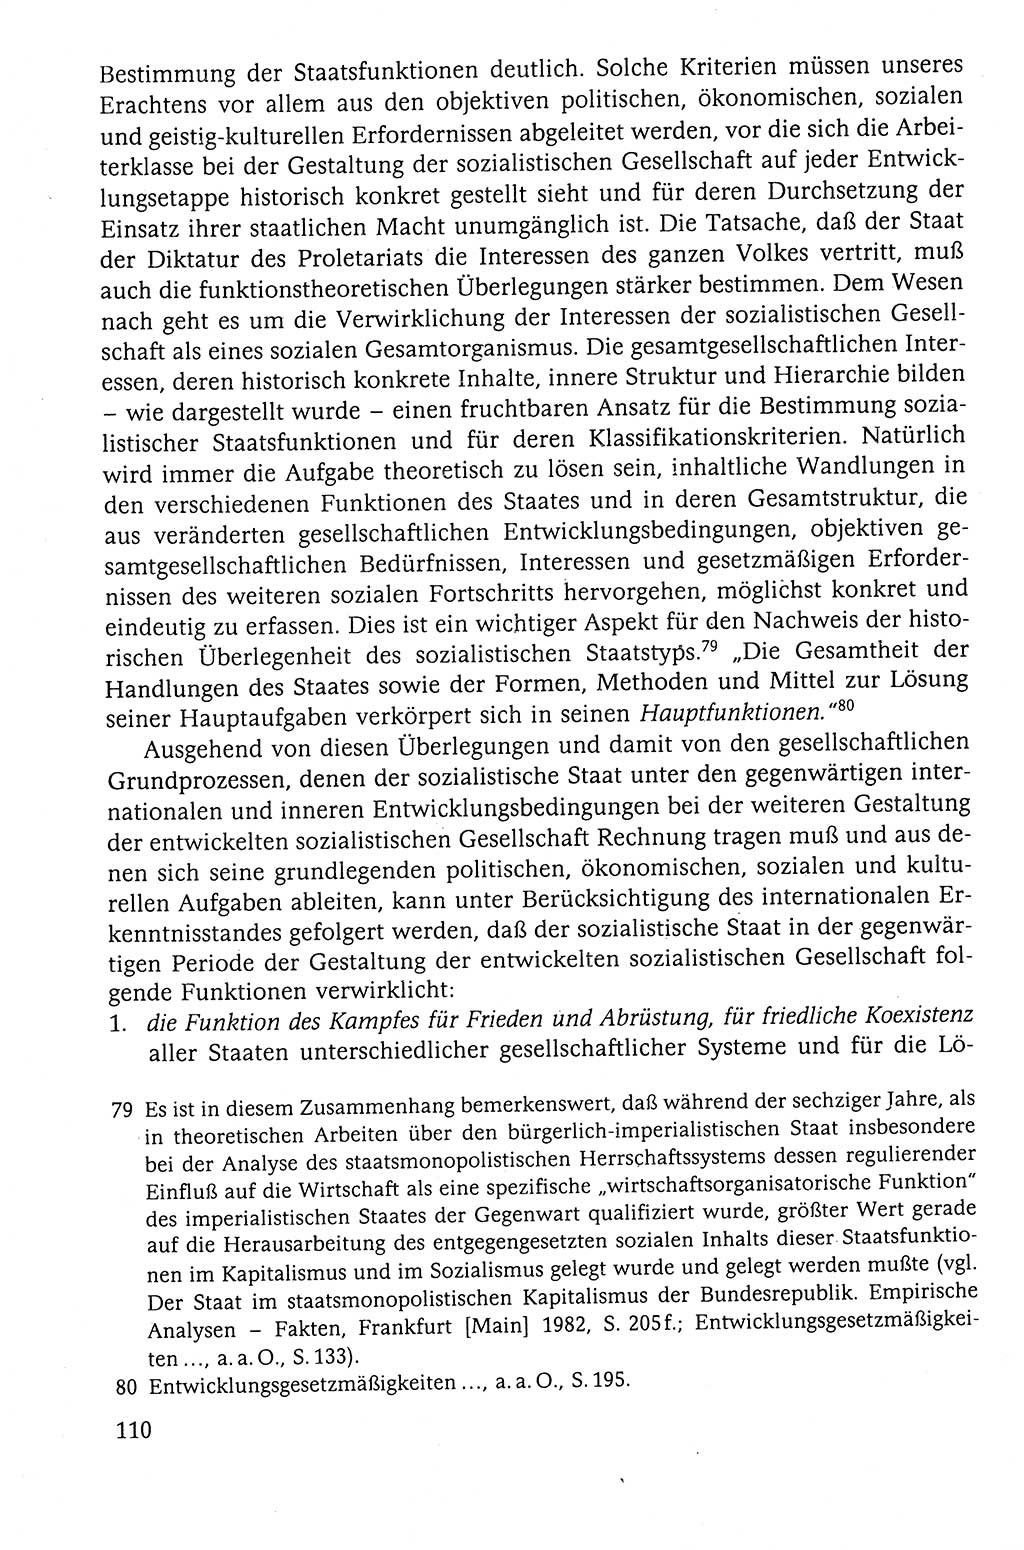 Der Staat im politischen System der DDR (Deutsche Demokratische Republik) 1986, Seite 110 (St. pol. Sys. DDR 1986, S. 110)